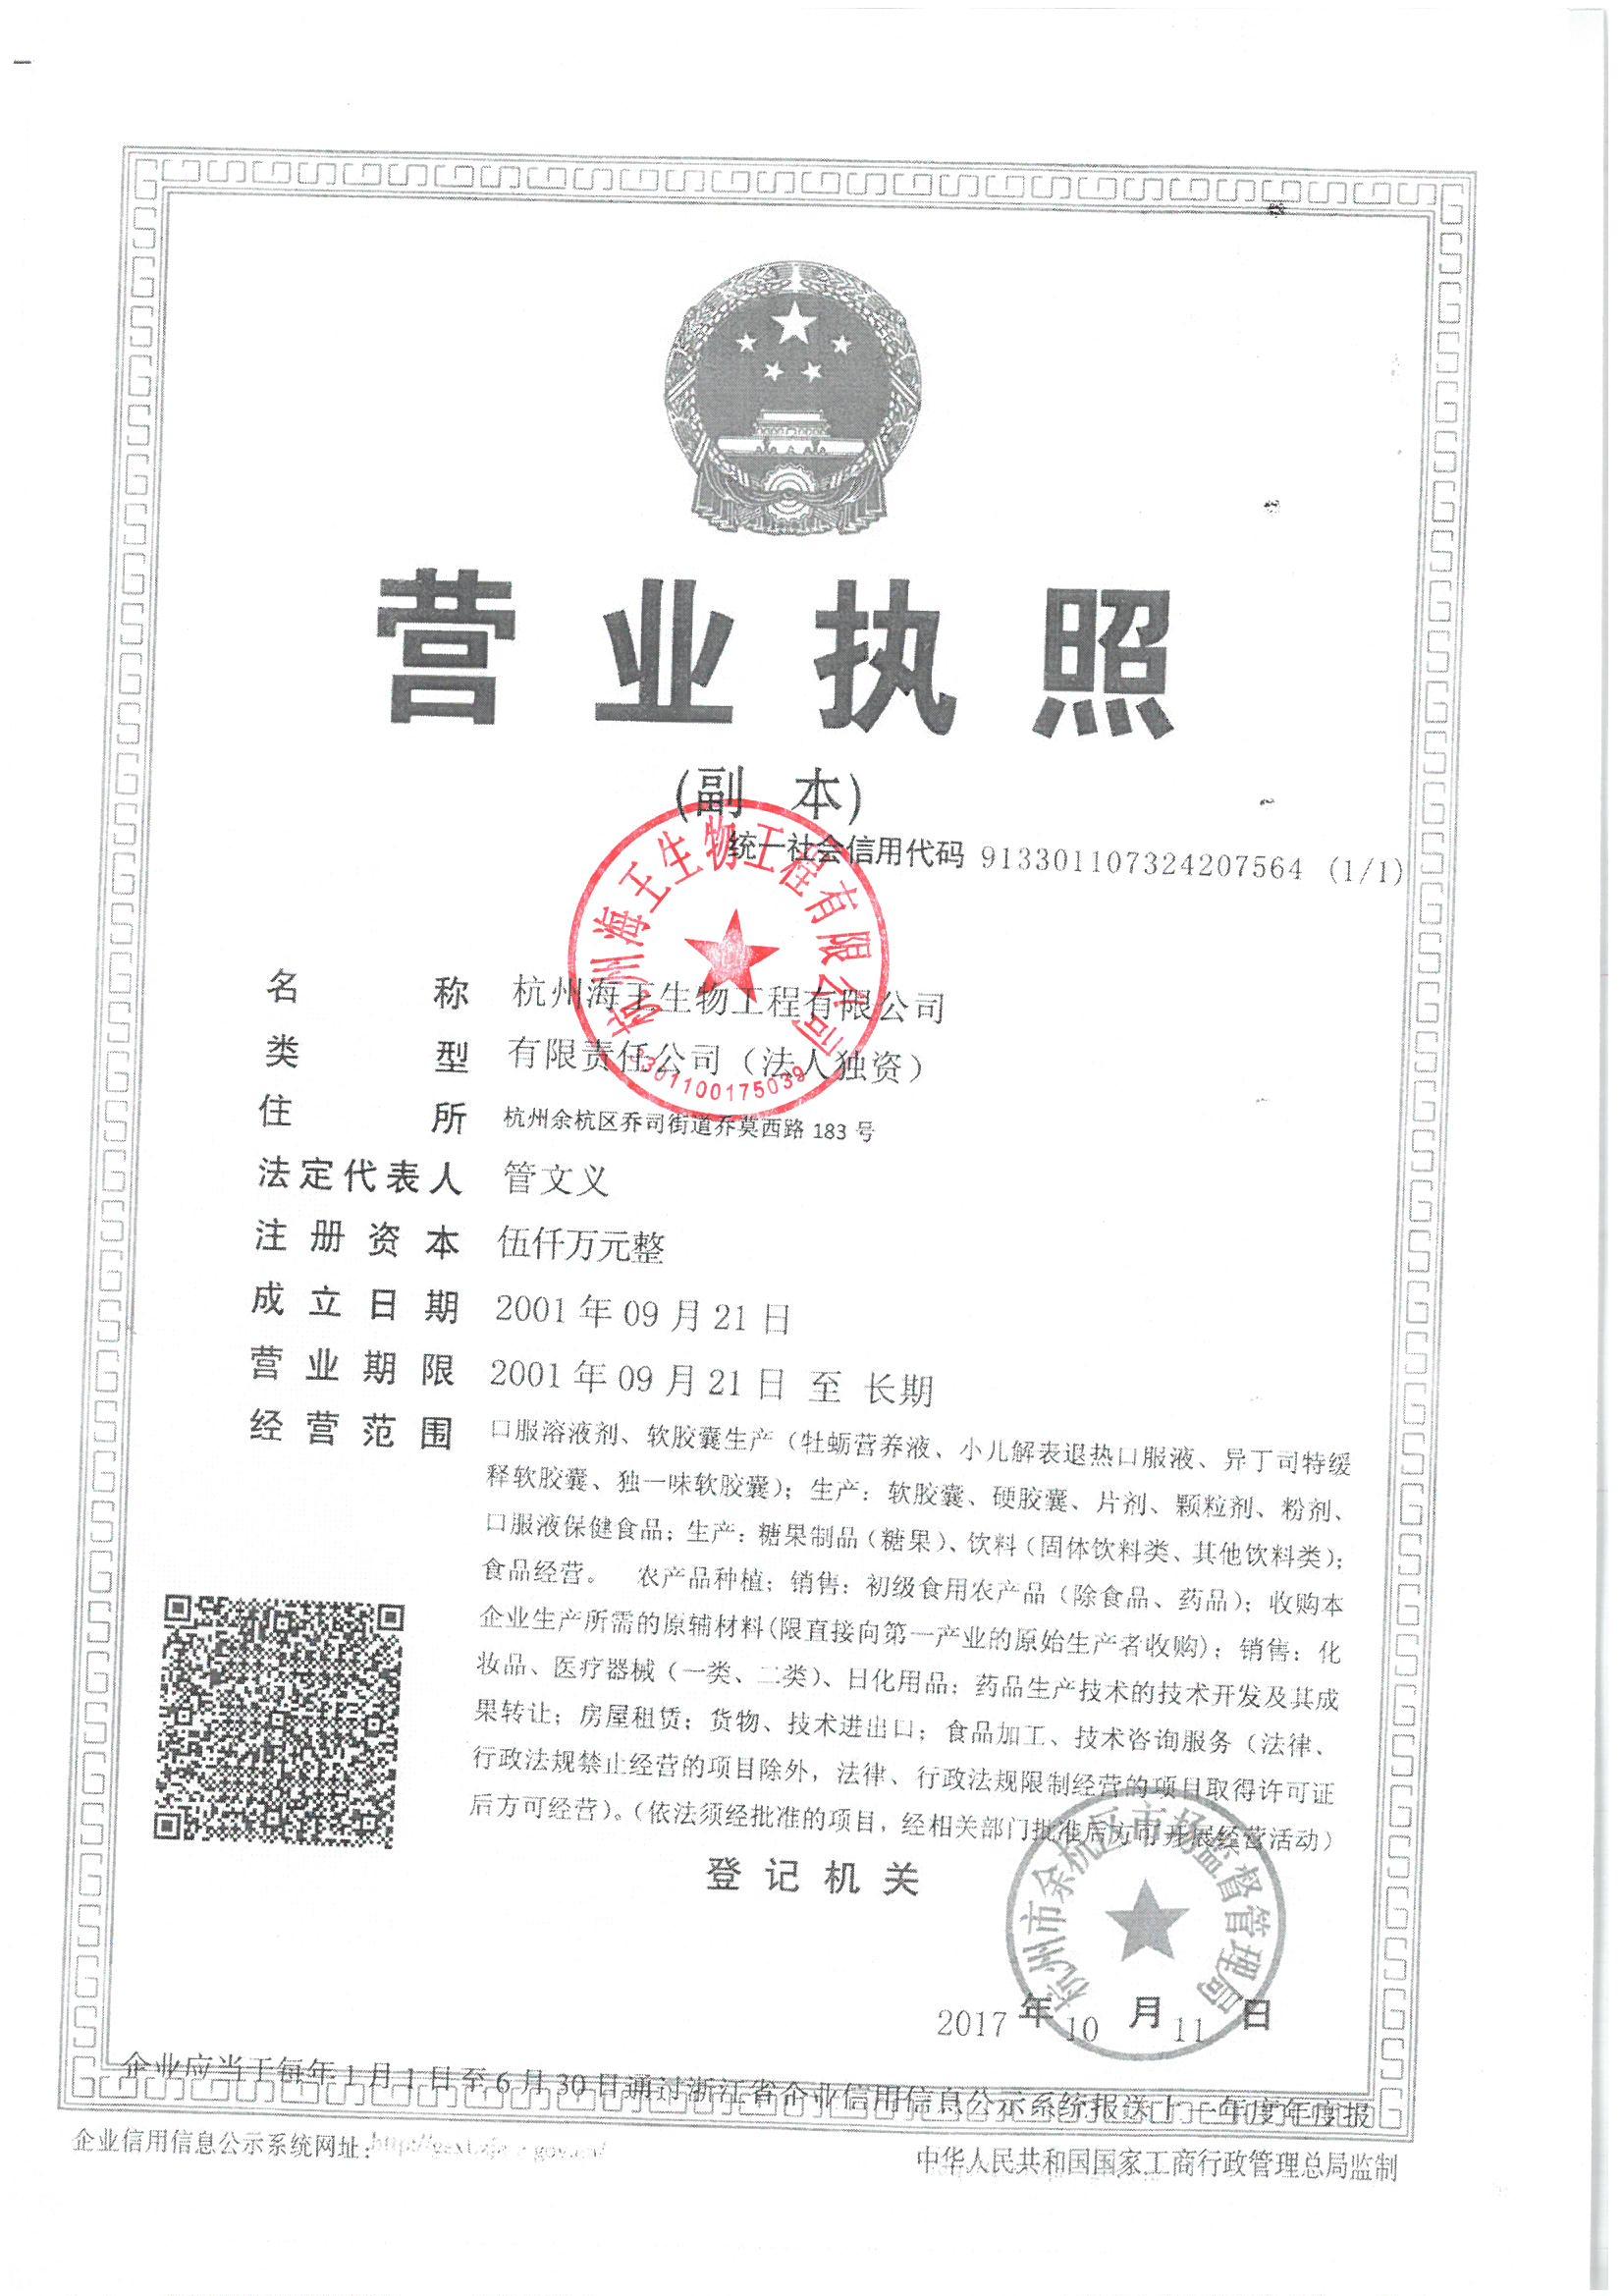 杭州海王生物工程有限公司